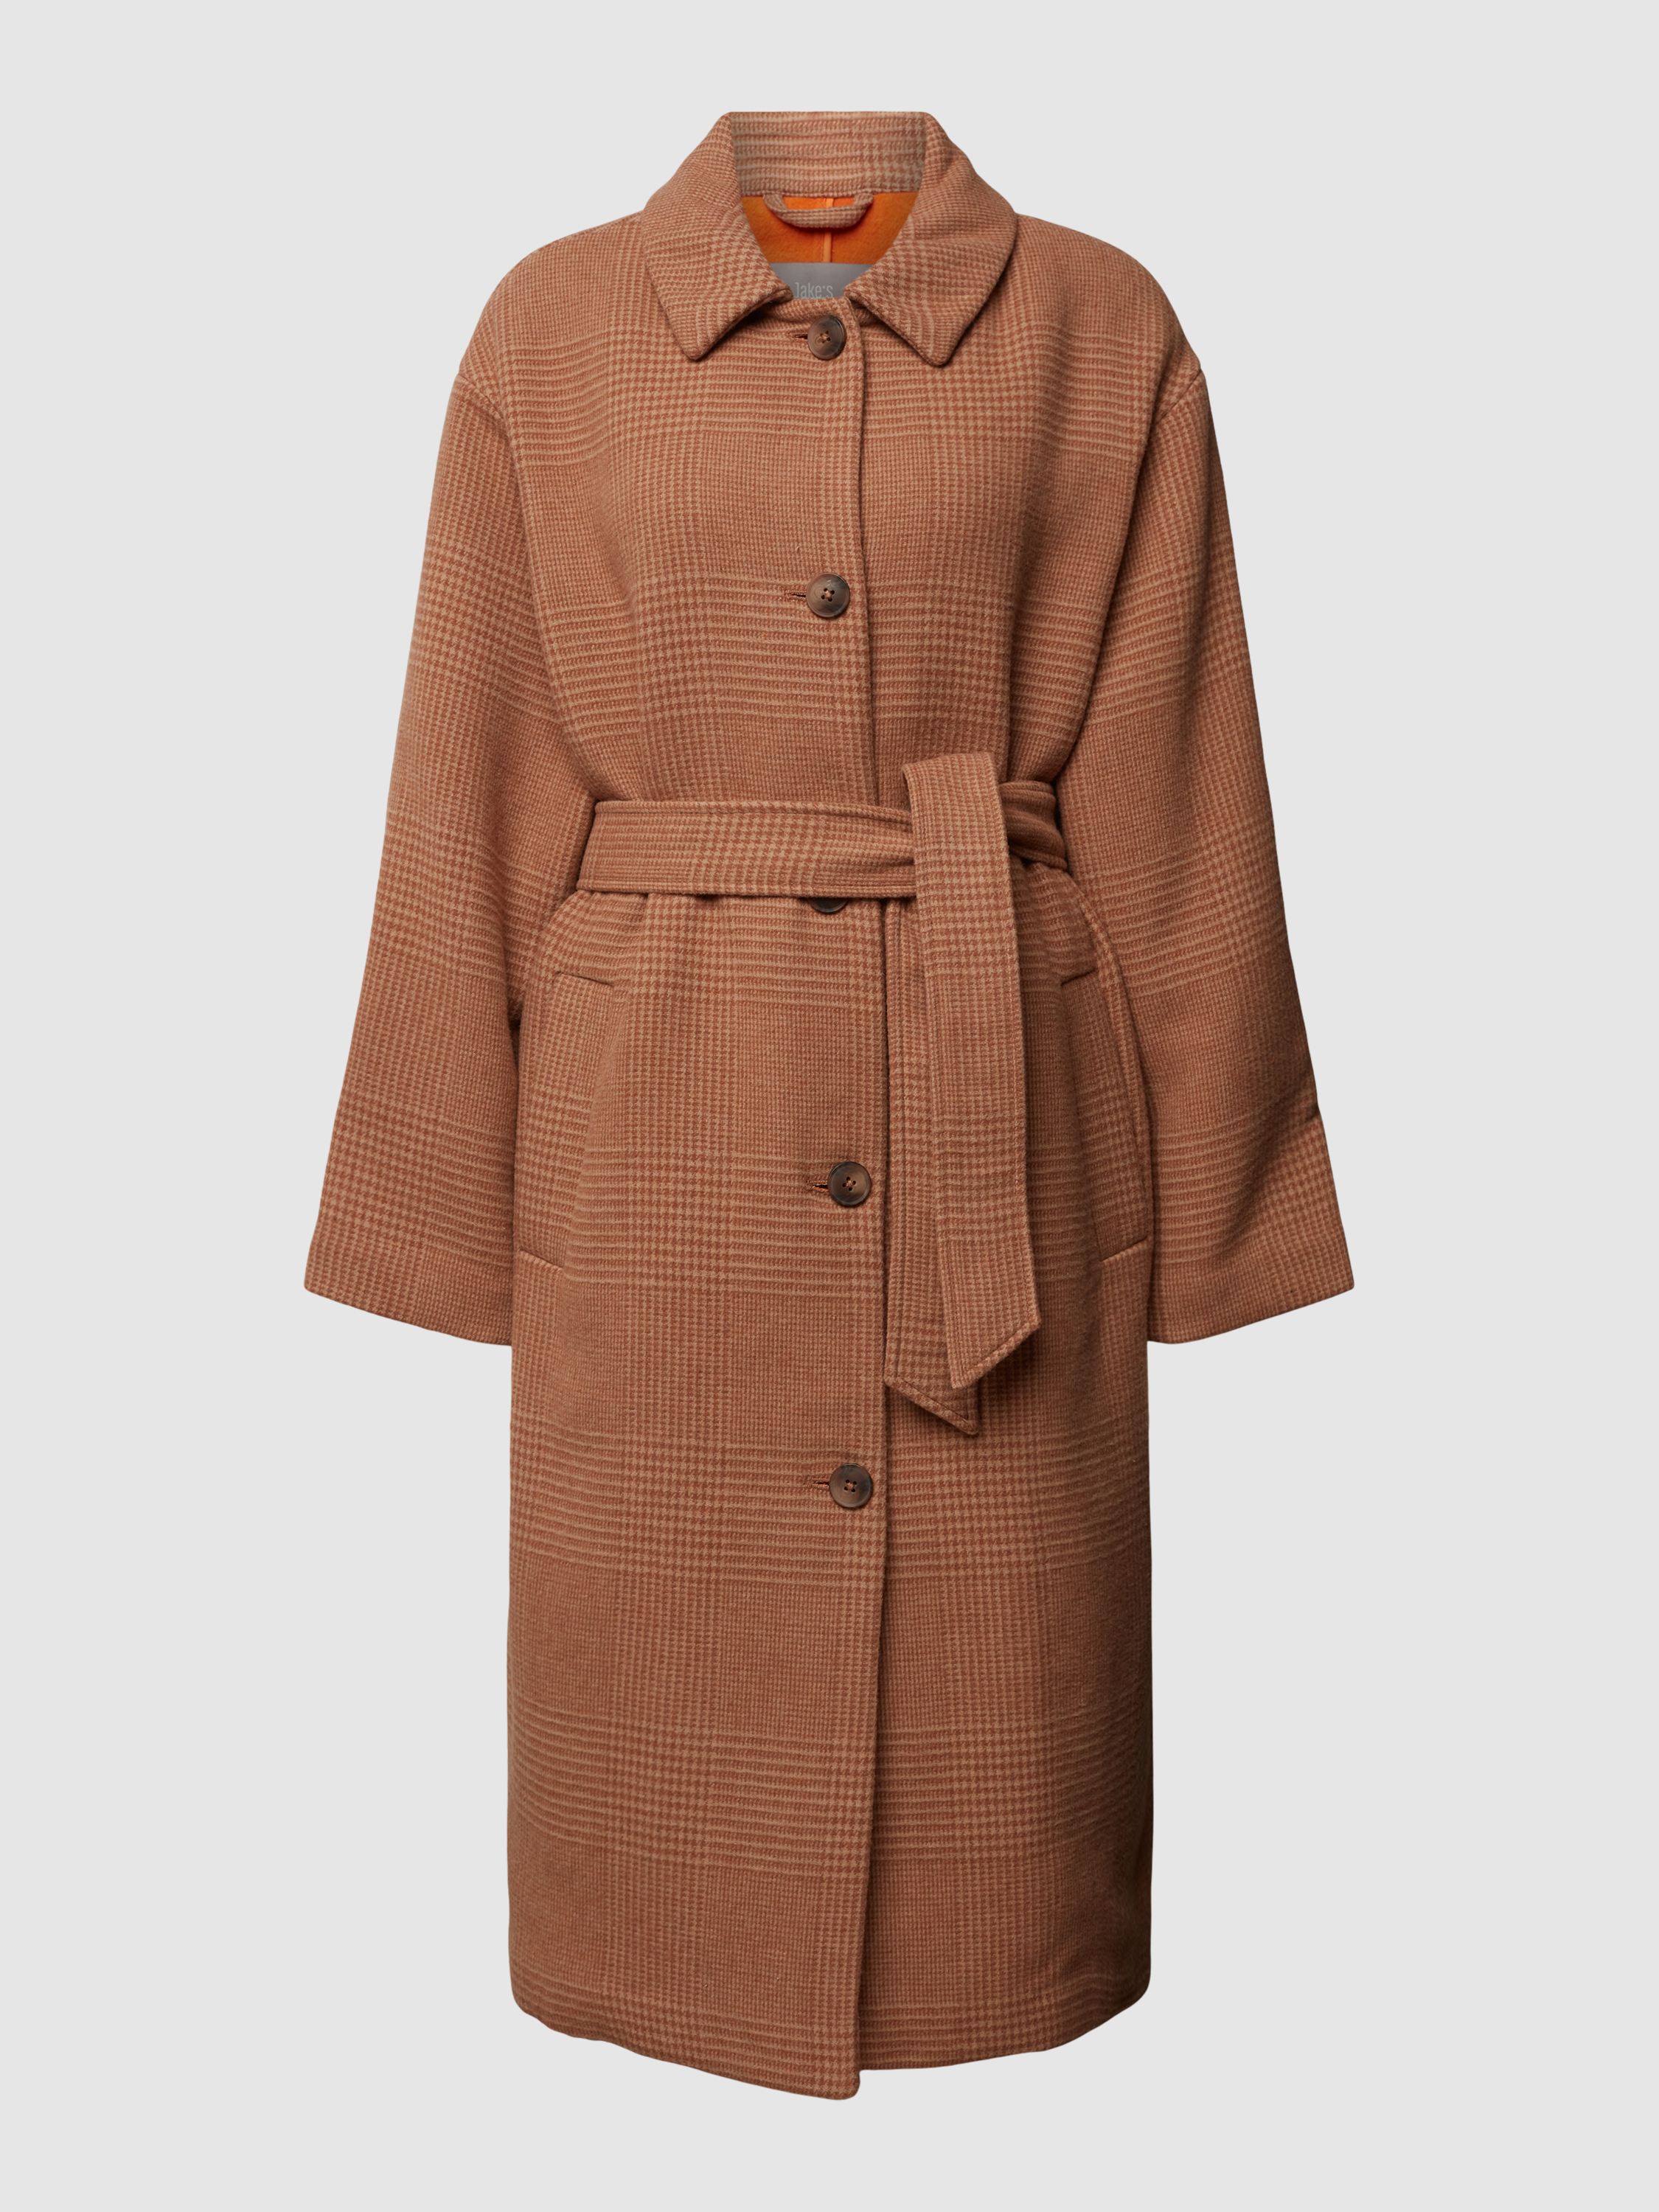 Пальто женское Jake's Collection 1606156 коричневое 42 (доставка из-за рубежа)